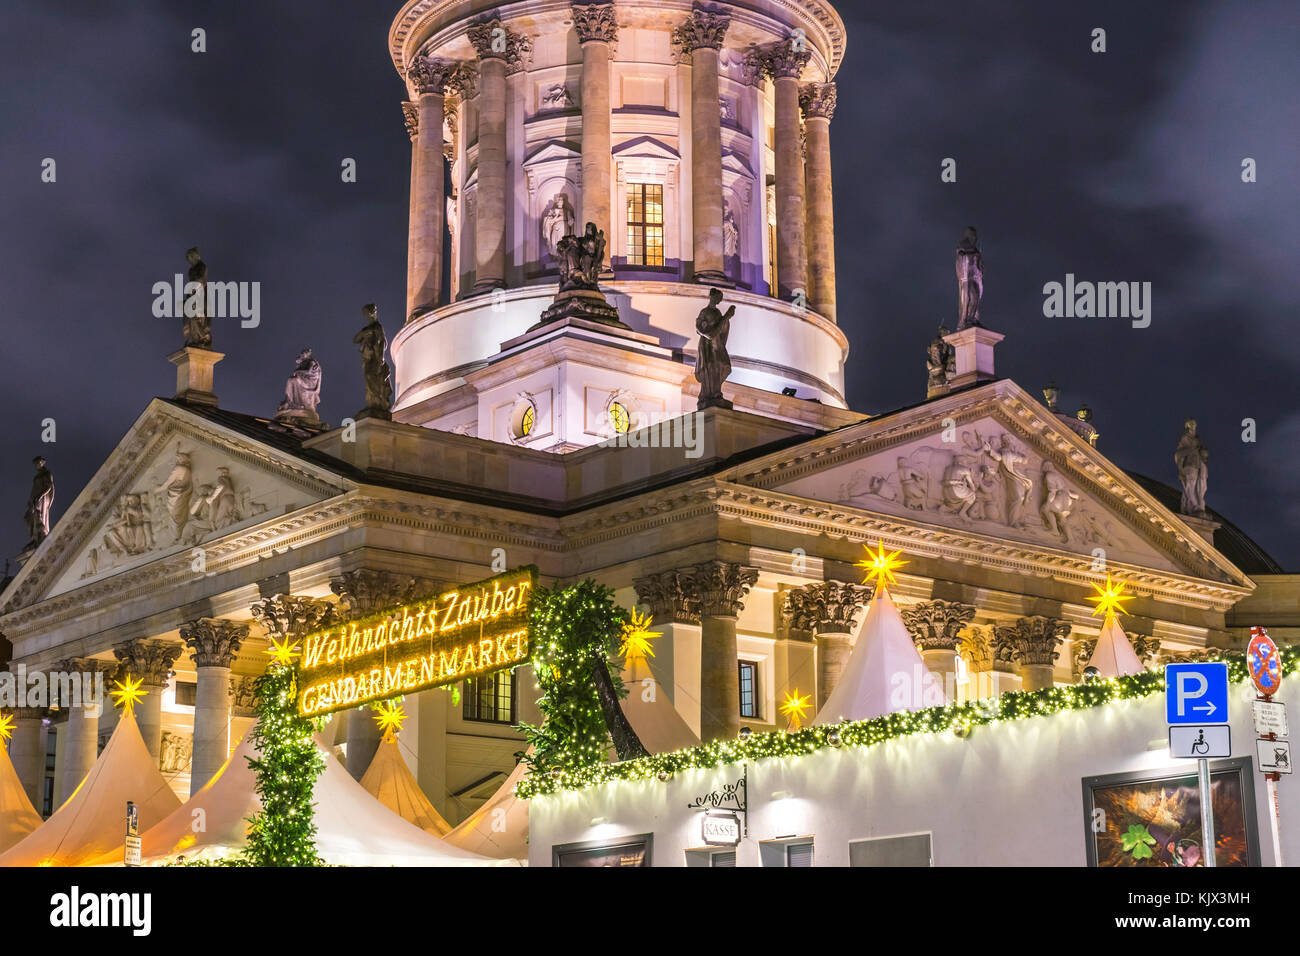 Blick über den Weihnachtsmarkt "Weihnachtszauber Gendarmenmarkt" mit der beleuchteten Neue Kirche (Deutscher Dom) im Hintergrund, Berlin, Deutschland Stockfoto